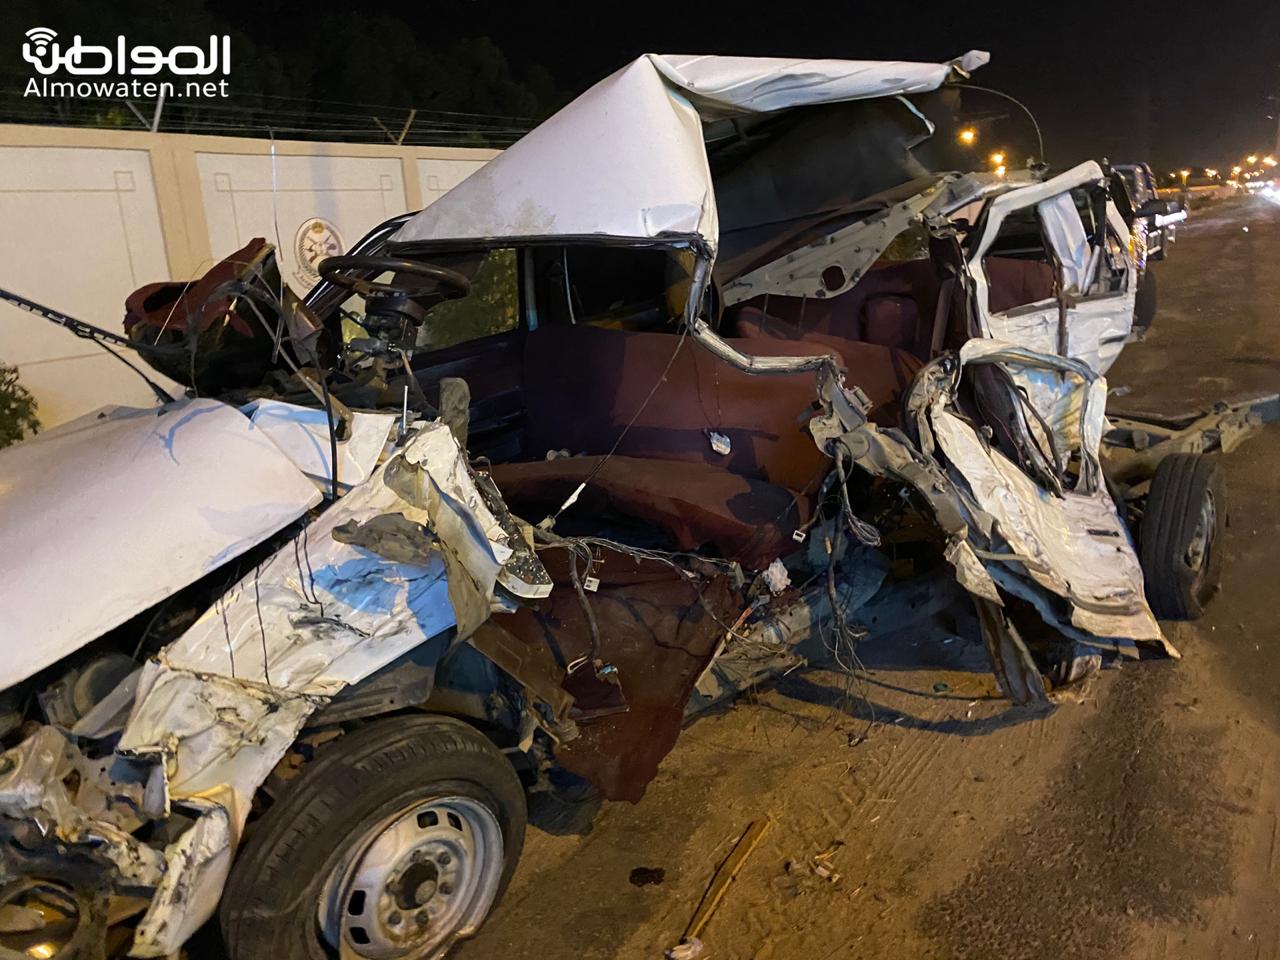 7 إصابات في حادث مروع بين مركبتين على طريق الملك خالد في خميس مشيط